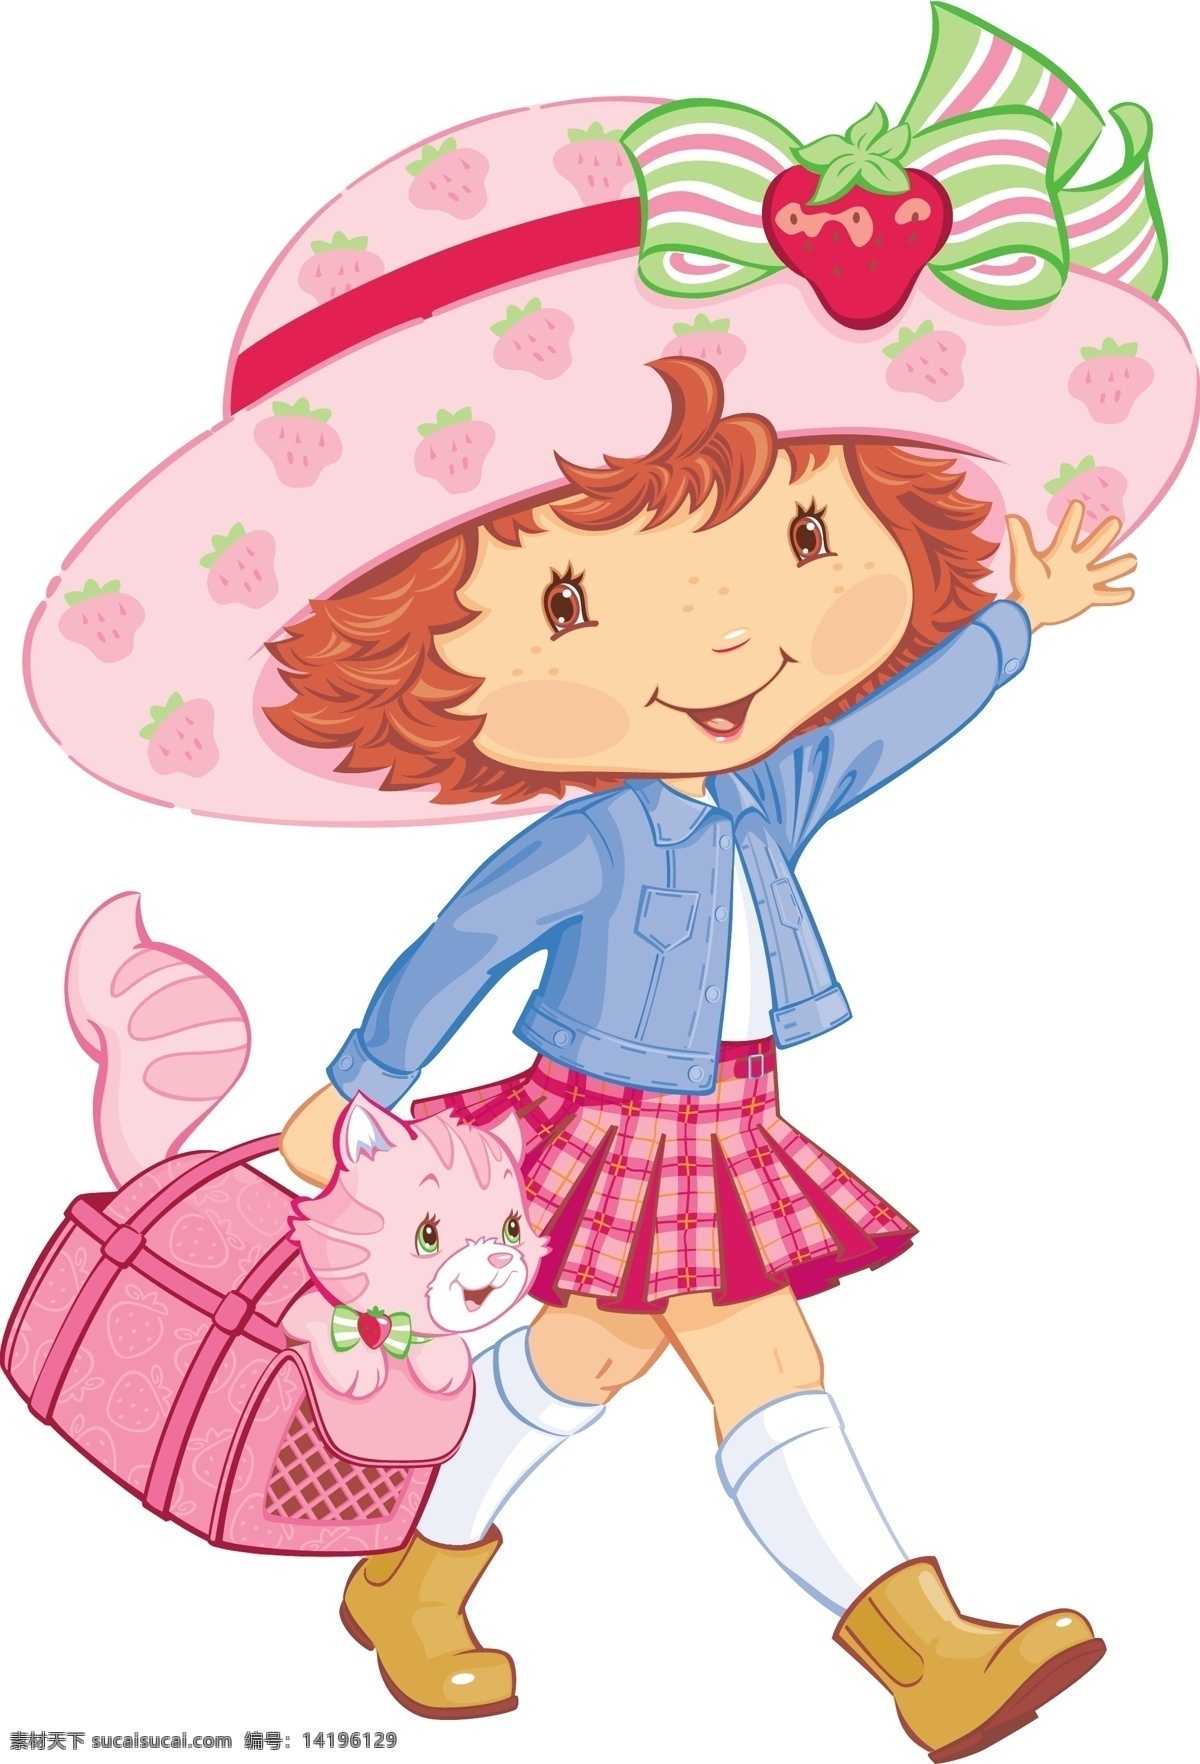 甜美 矢量 卡通 女孩 草莓 活泼 卡通女孩 开心 可爱 美丽 漂亮 书包 思考 戴帽子的女孩 坐在 上 背着 小猫 看书的女孩 招手 矢量图 矢量人物